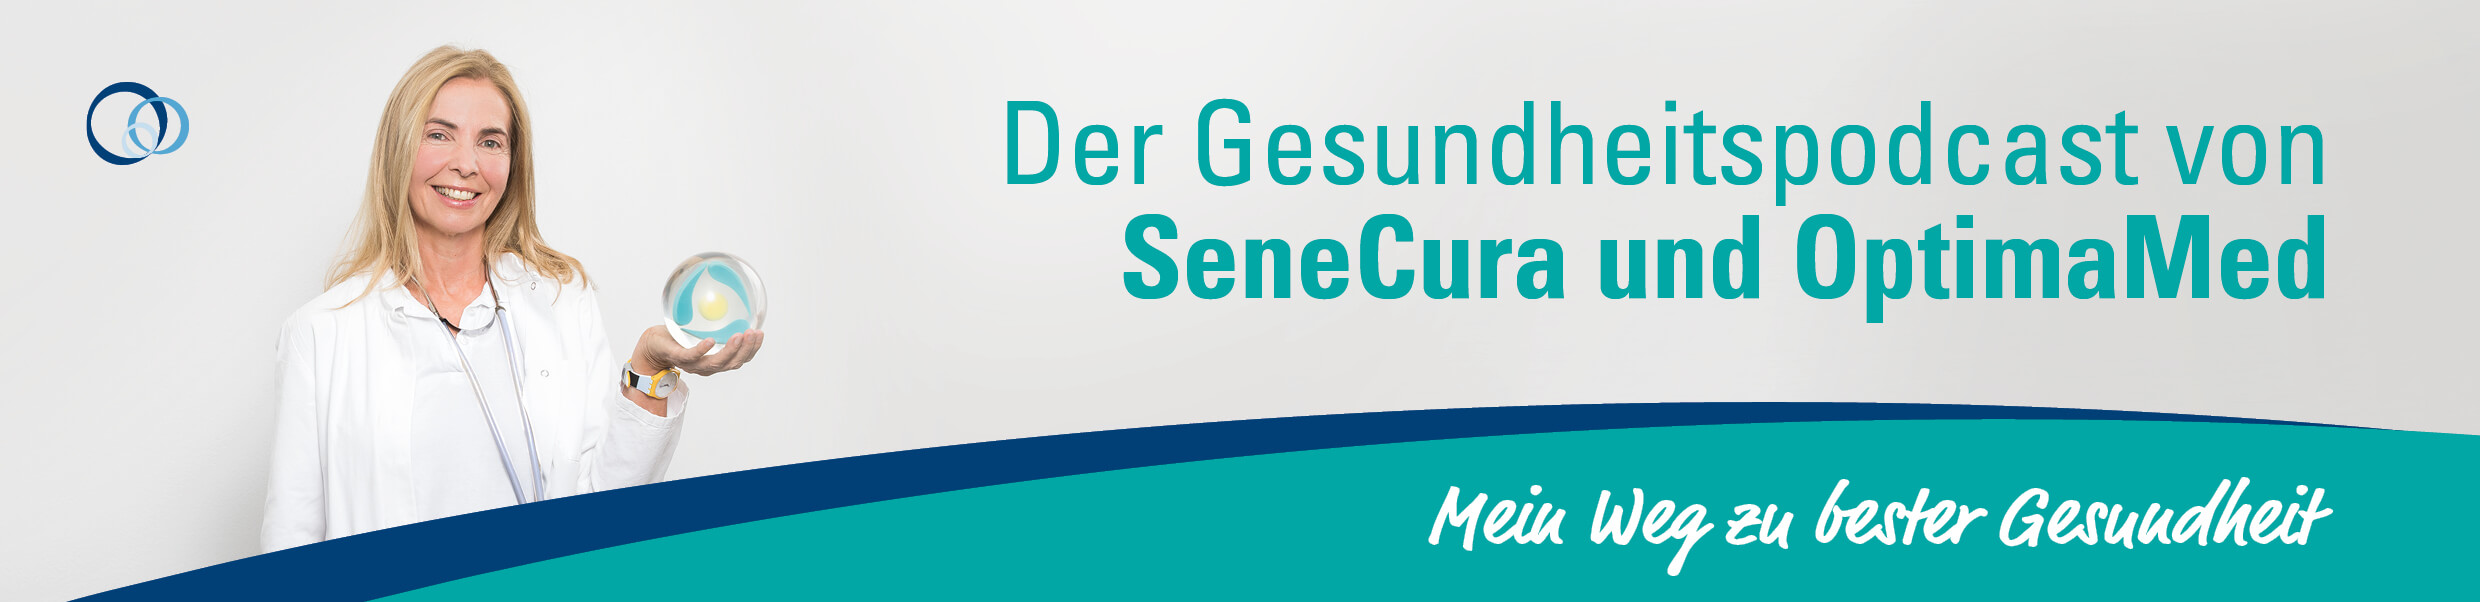 Der Gesundheitspodcast von SeneCura und OptimaMed